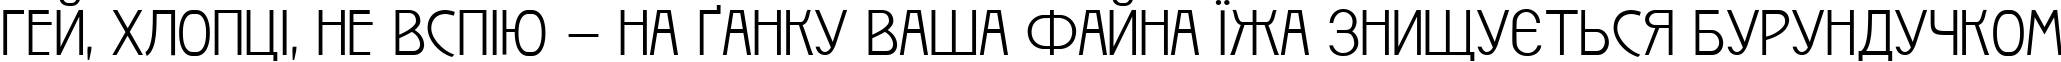 Пример написания шрифтом Izis Two текста на украинском